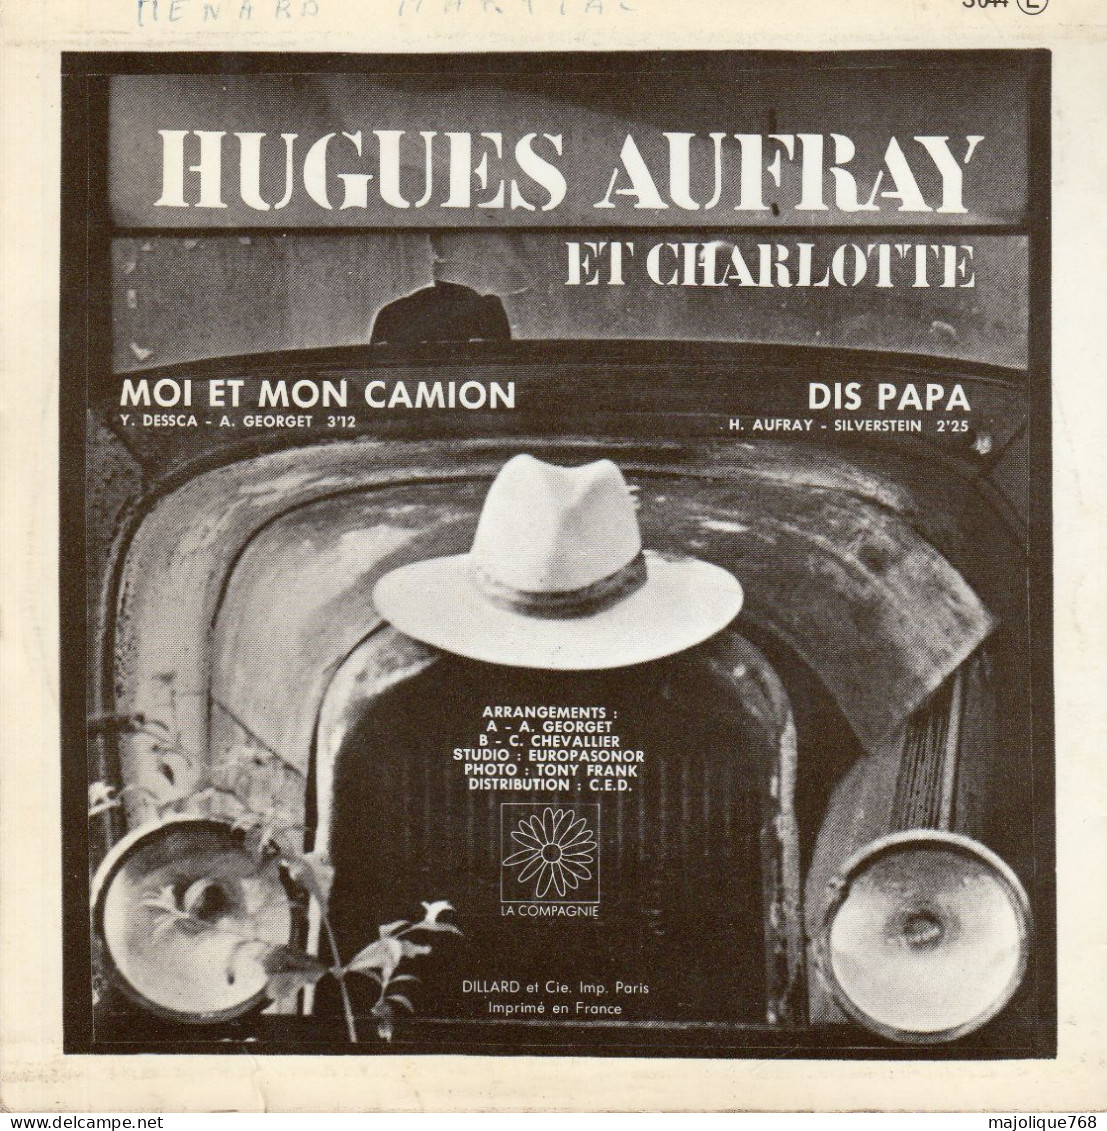 Disque De Hugues Aufray Et Charlotte - Moi Et Mon Camion - La Compagnie S044 - France 1970 - Disco & Pop